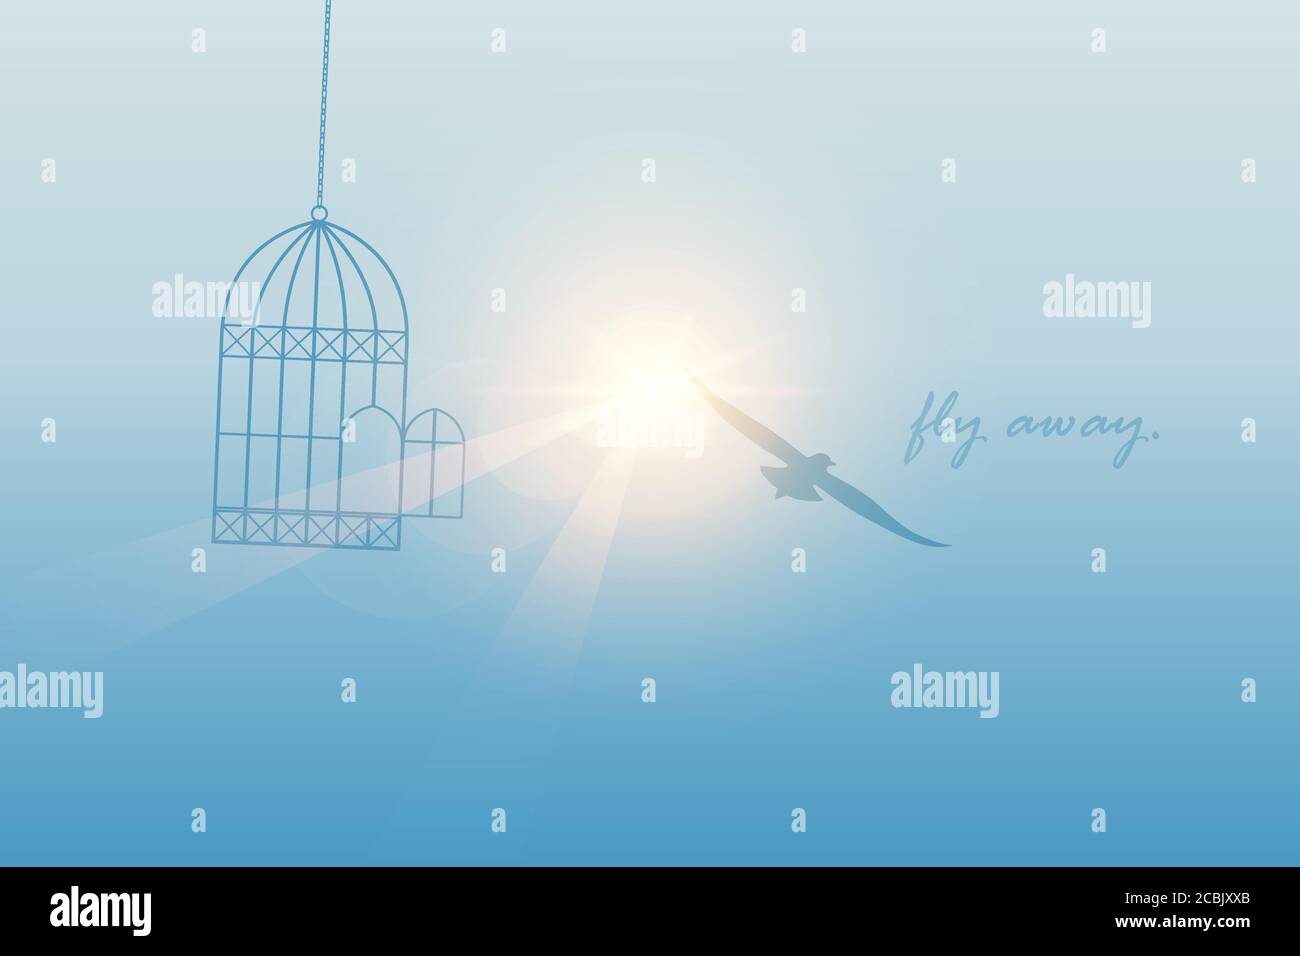 Oiseau vole hors de la cage dans le ciel ensoleillé illustration vecteur EPS10 Illustration de Vecteur